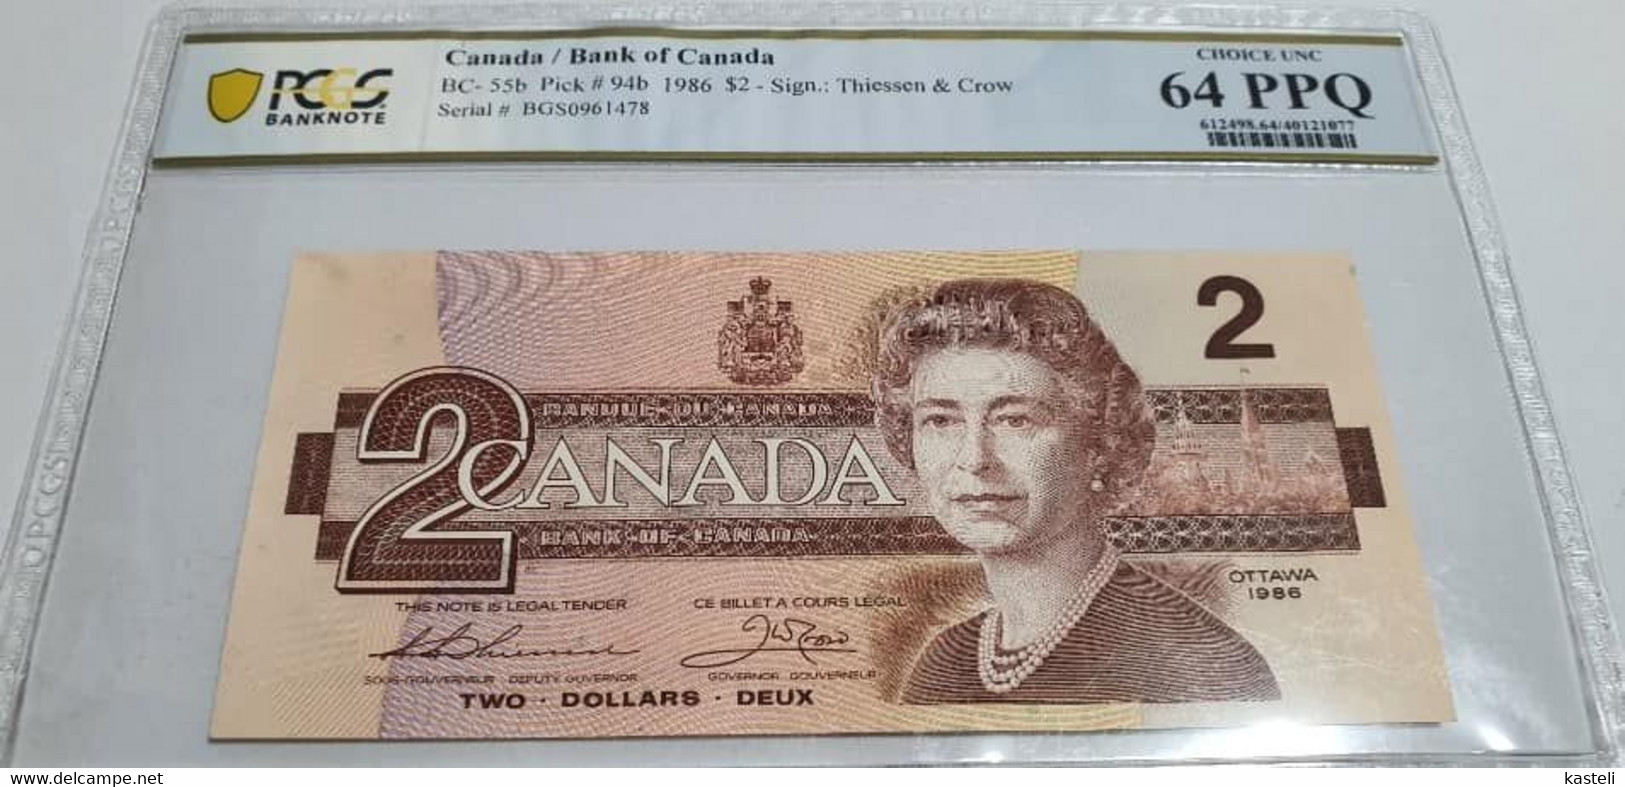 Jamaica,5$ - Canada 2$ - Nea Zealanda 3$ -  Bolivia .5 Centavos Or 50 000 Pesos, Bolivia 1987  Lot Of 4  Gradate Bilete - Jamaique